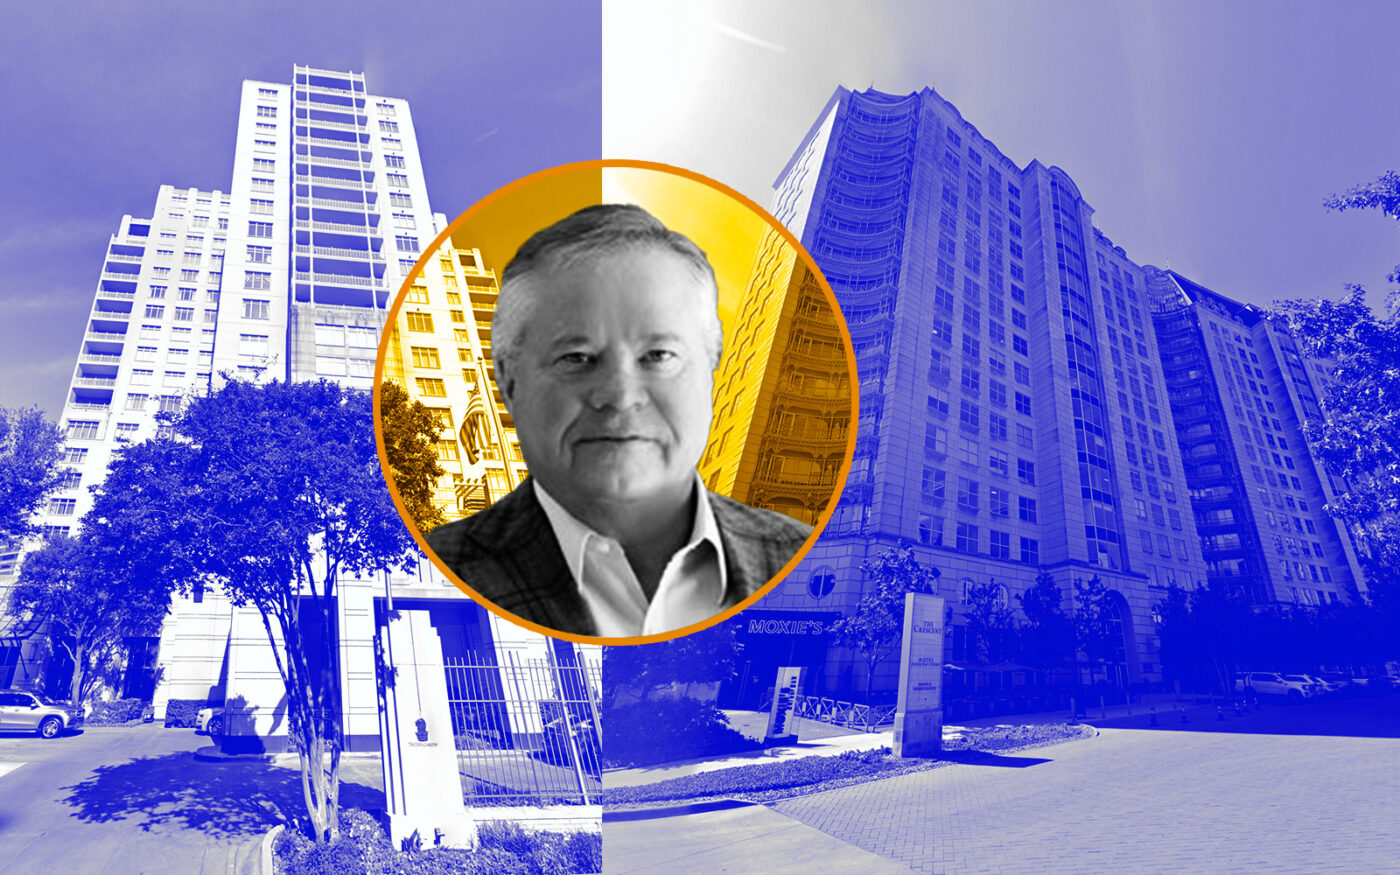 John Goff of Crescent Real Estate with The Ritz-Carlton Dallas and Hotel Crescent Court in Dallas